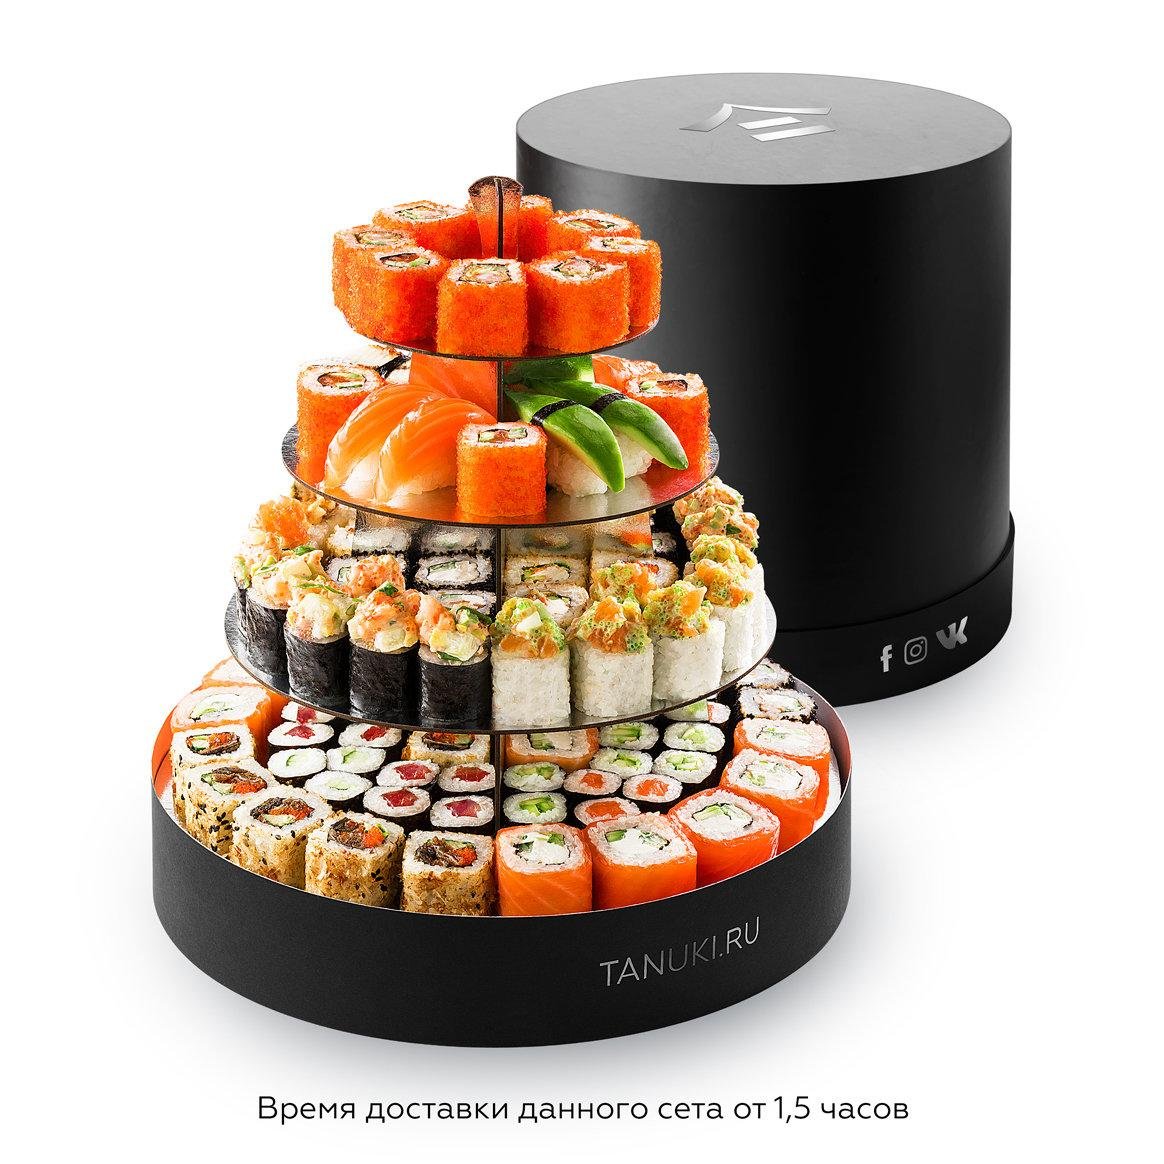 Заказать суши и роллы с доставкой люберцы тануки фото 104